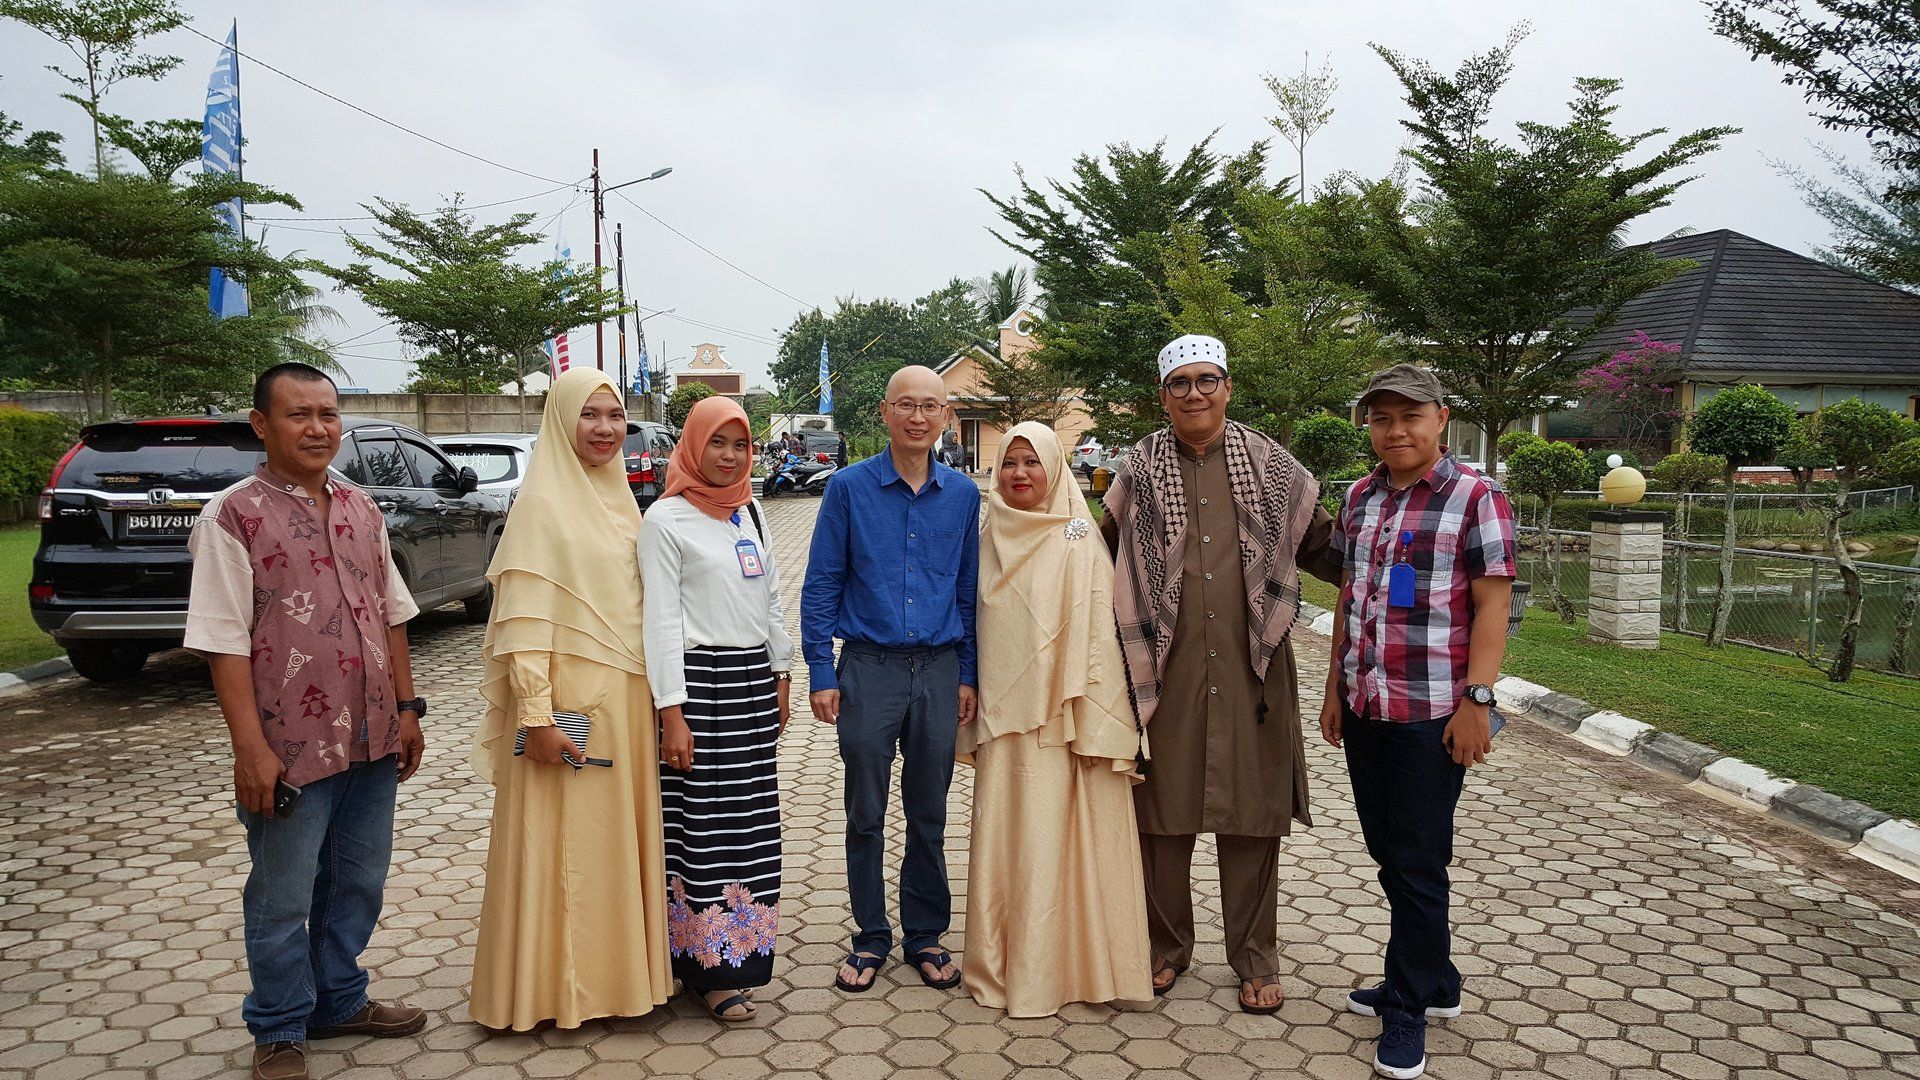 acara selamatan rumah baru di perumahan villa sierra vista palembang keluarga ibu nilawati warkop medina